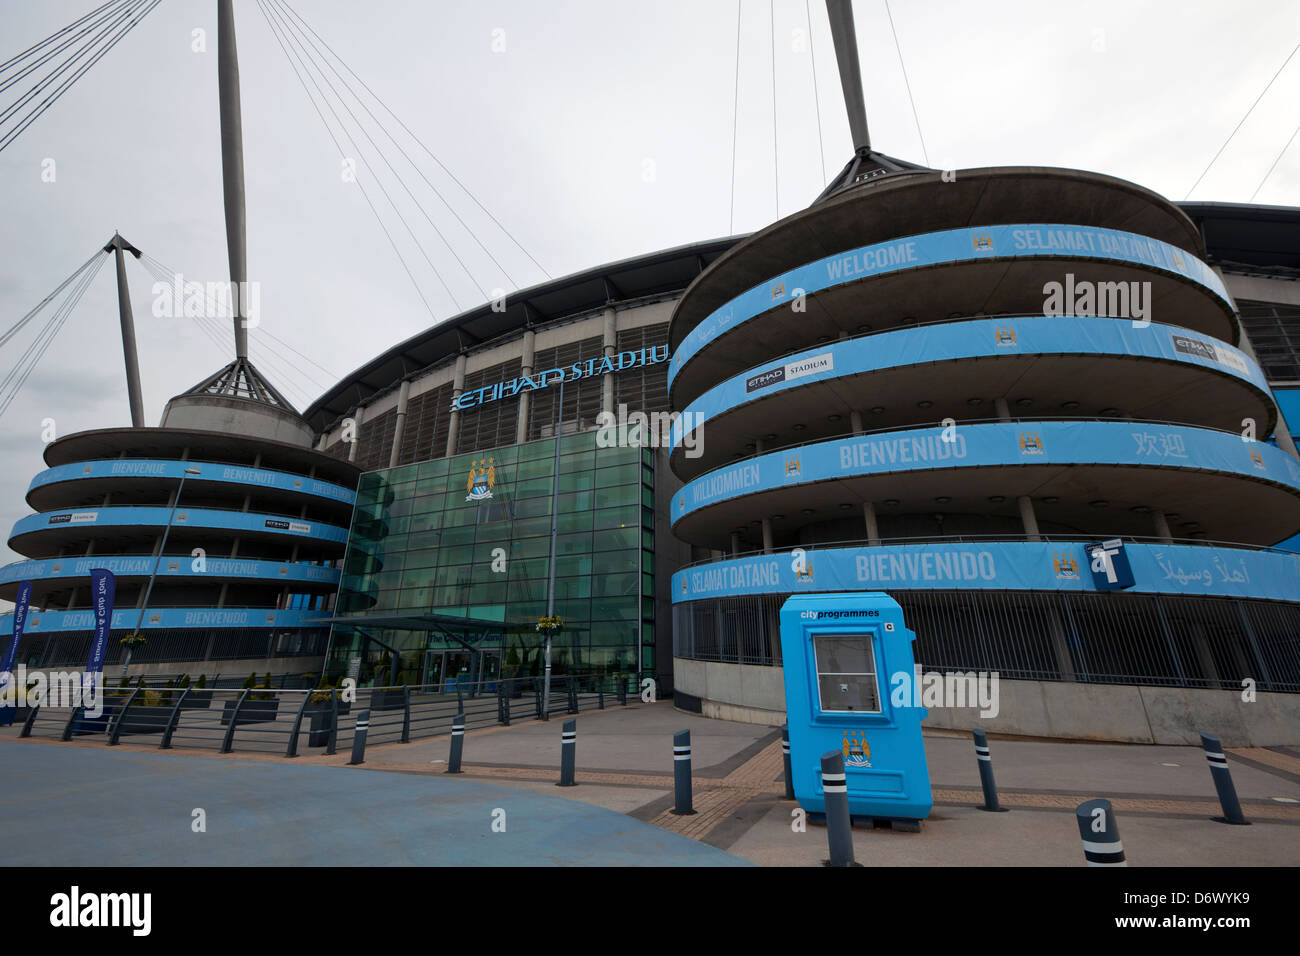 El estadio Etihad Stadium es el hogar de Manchester City Football Club de la Liga Premier Inglesa, uno de los más exitosos clubes en Inglaterra. Foto de stock